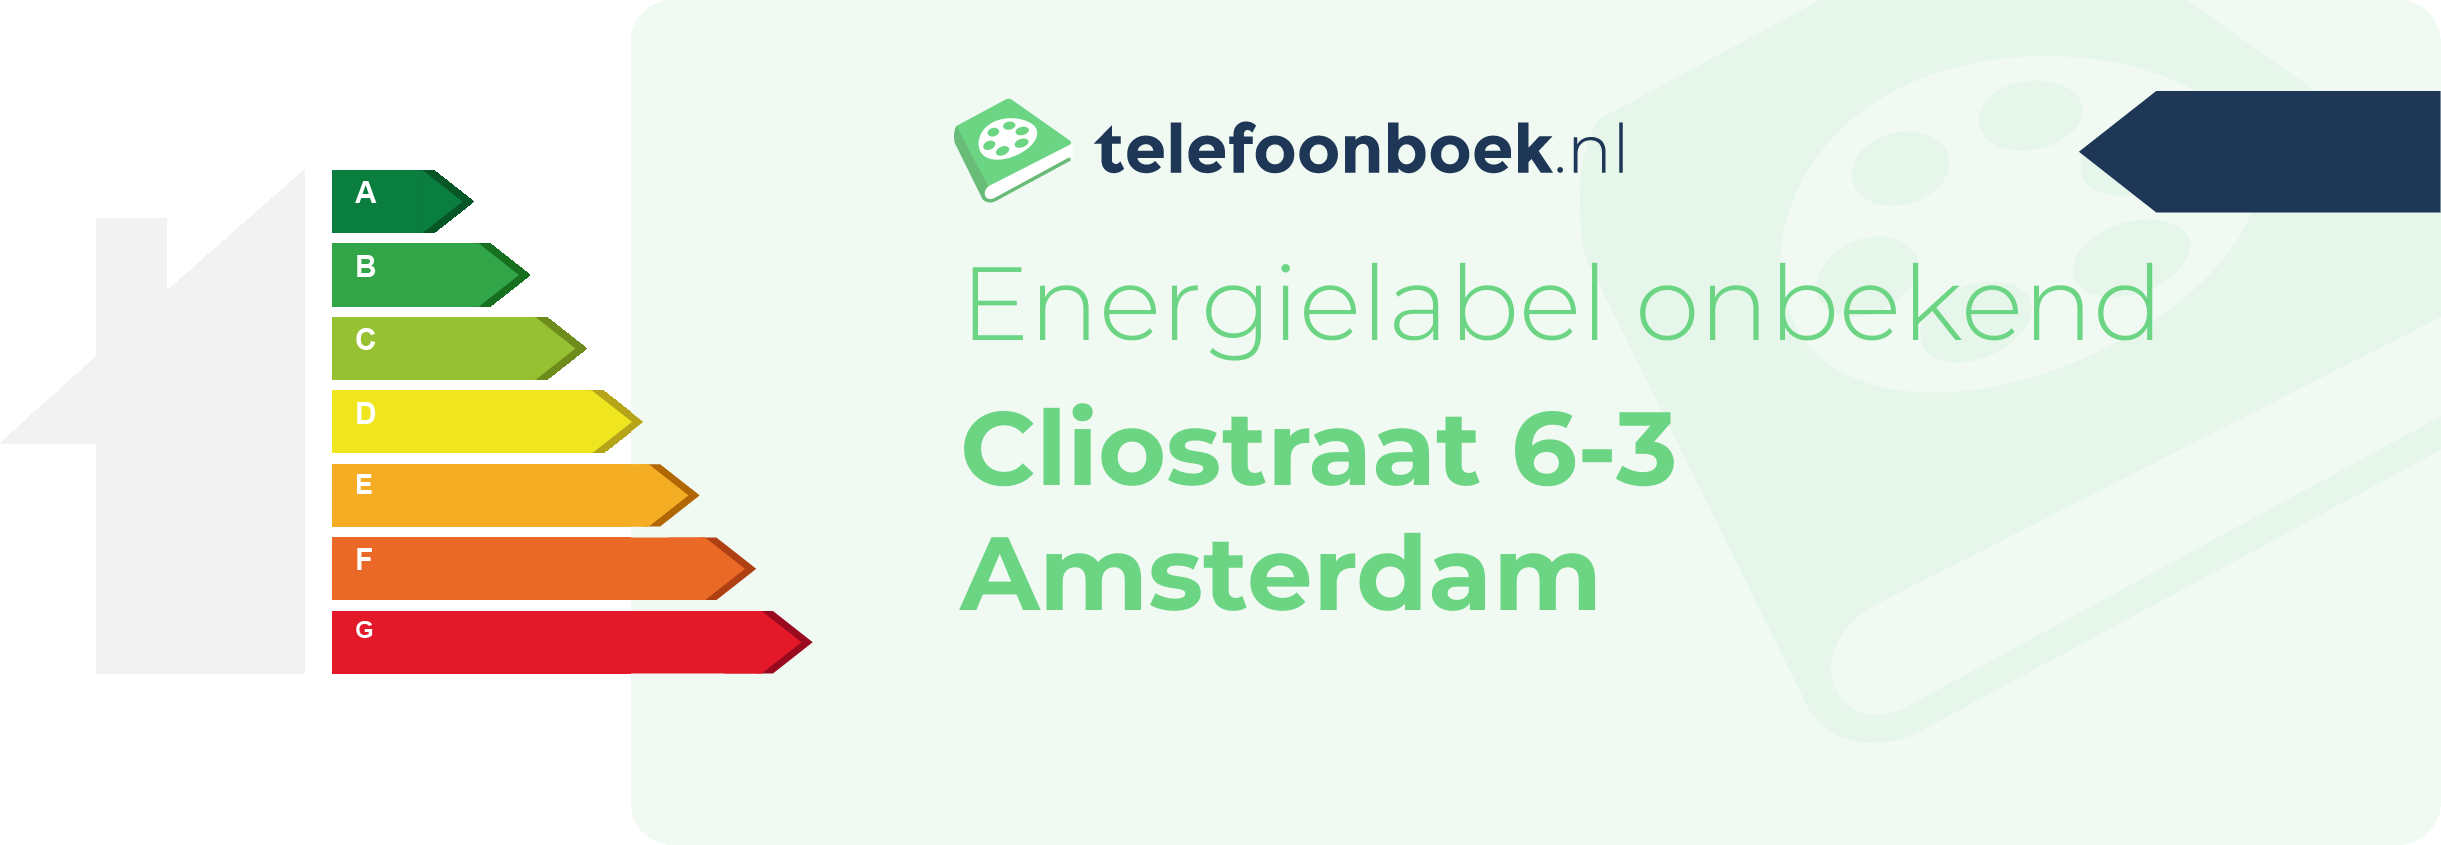 Energielabel Cliostraat 6-3 Amsterdam